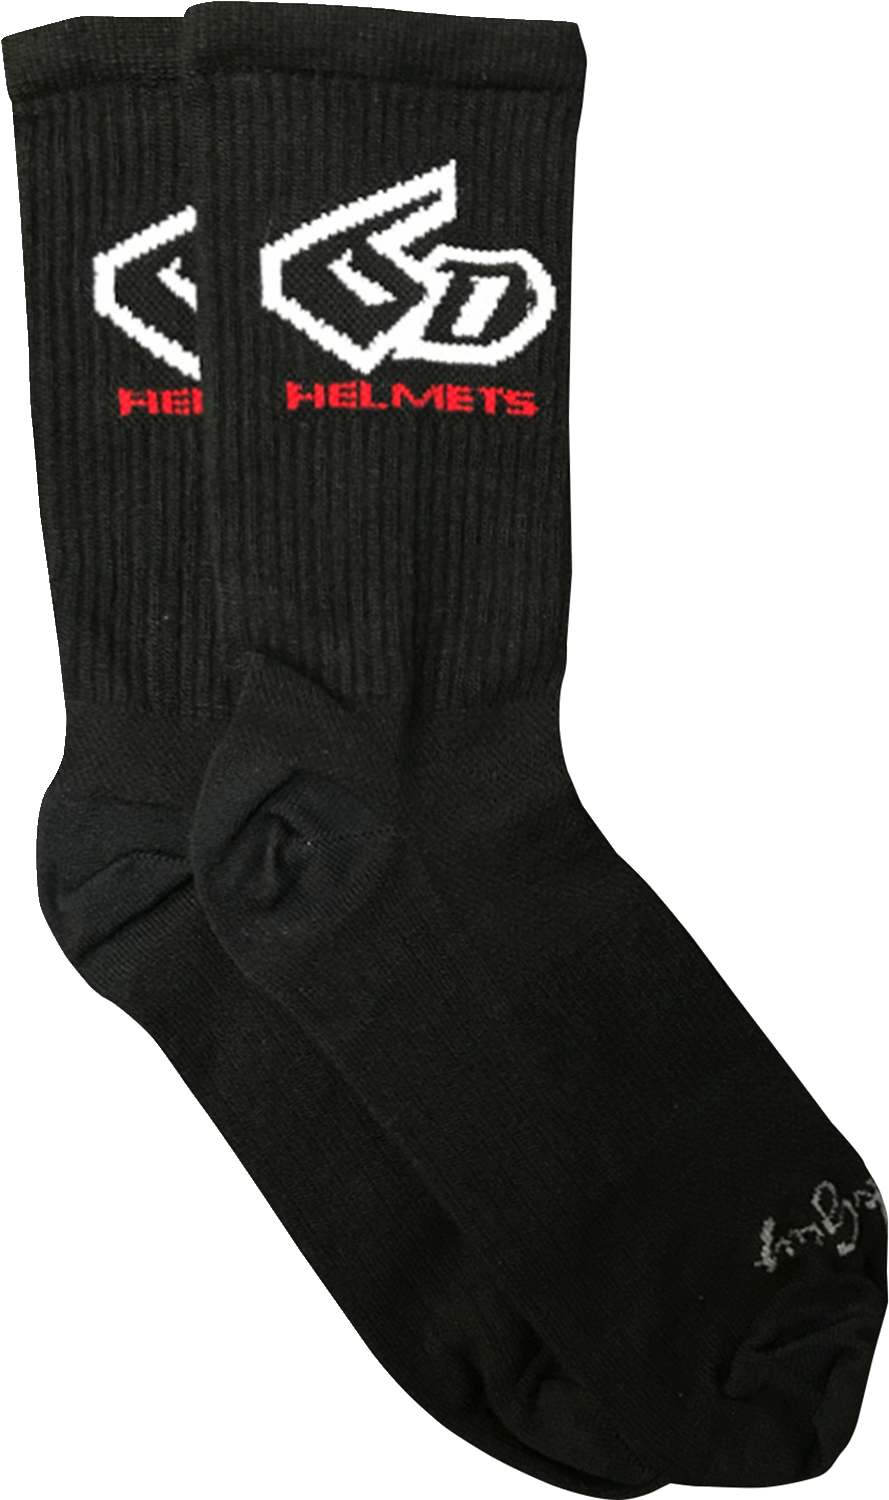 6D Cycling Socks - Black - Large/XL 52-7001